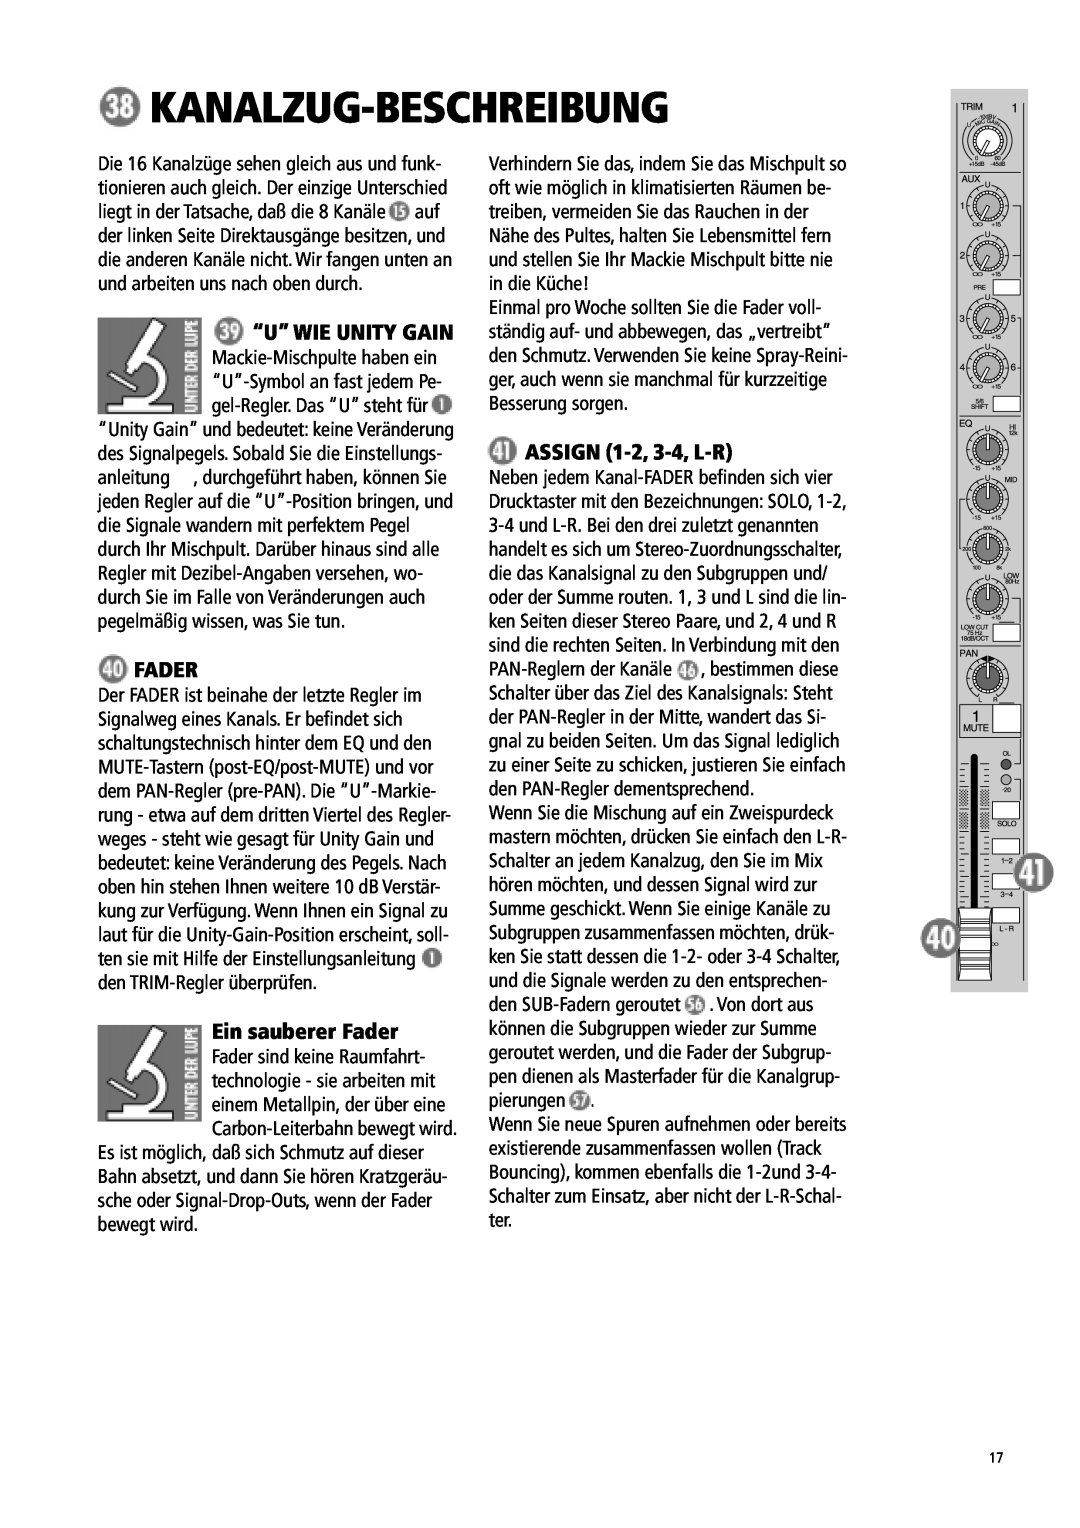 Mackie 1604-VLZ manual Kanalzug-Beschreibung, “U” Wie Unity Gain, Ein sauberer Fader, ASSIGN 1-2, 3-4, L-R 